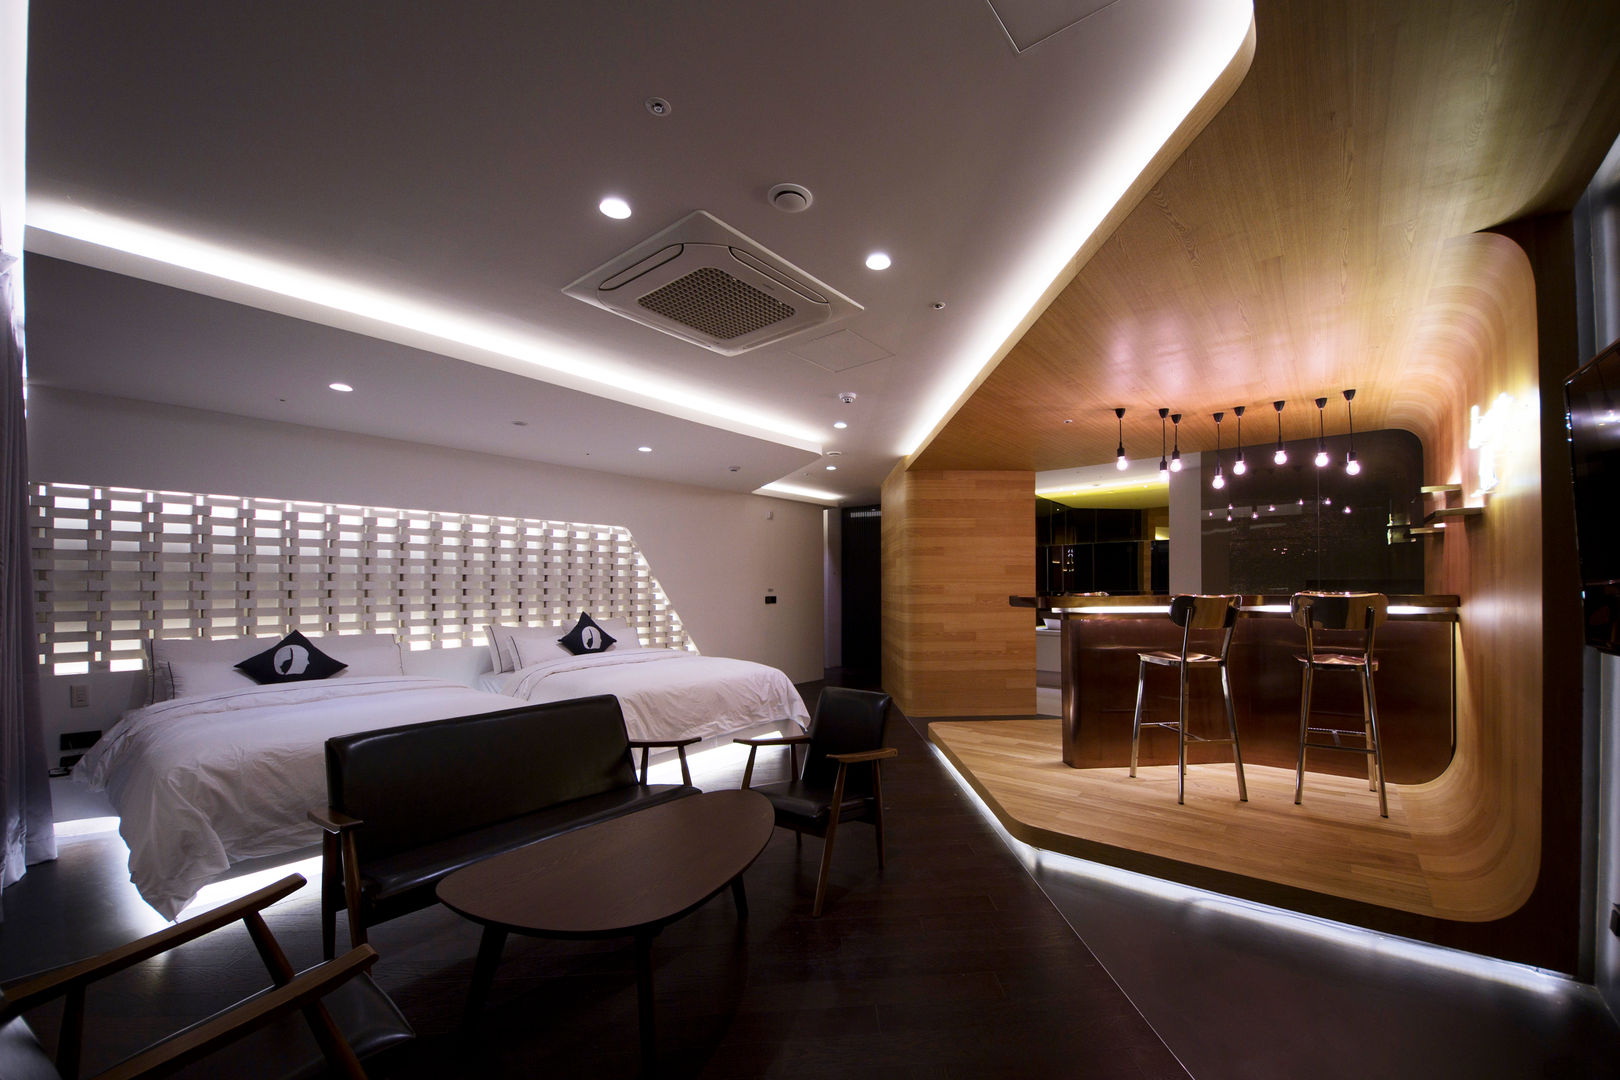 Lounge_17, Seungmo Lim Seungmo Lim 모던스타일 거실 가구,테이블,바닥,자동차 디자인,건물,천장,부동산,바닥,편안,장식